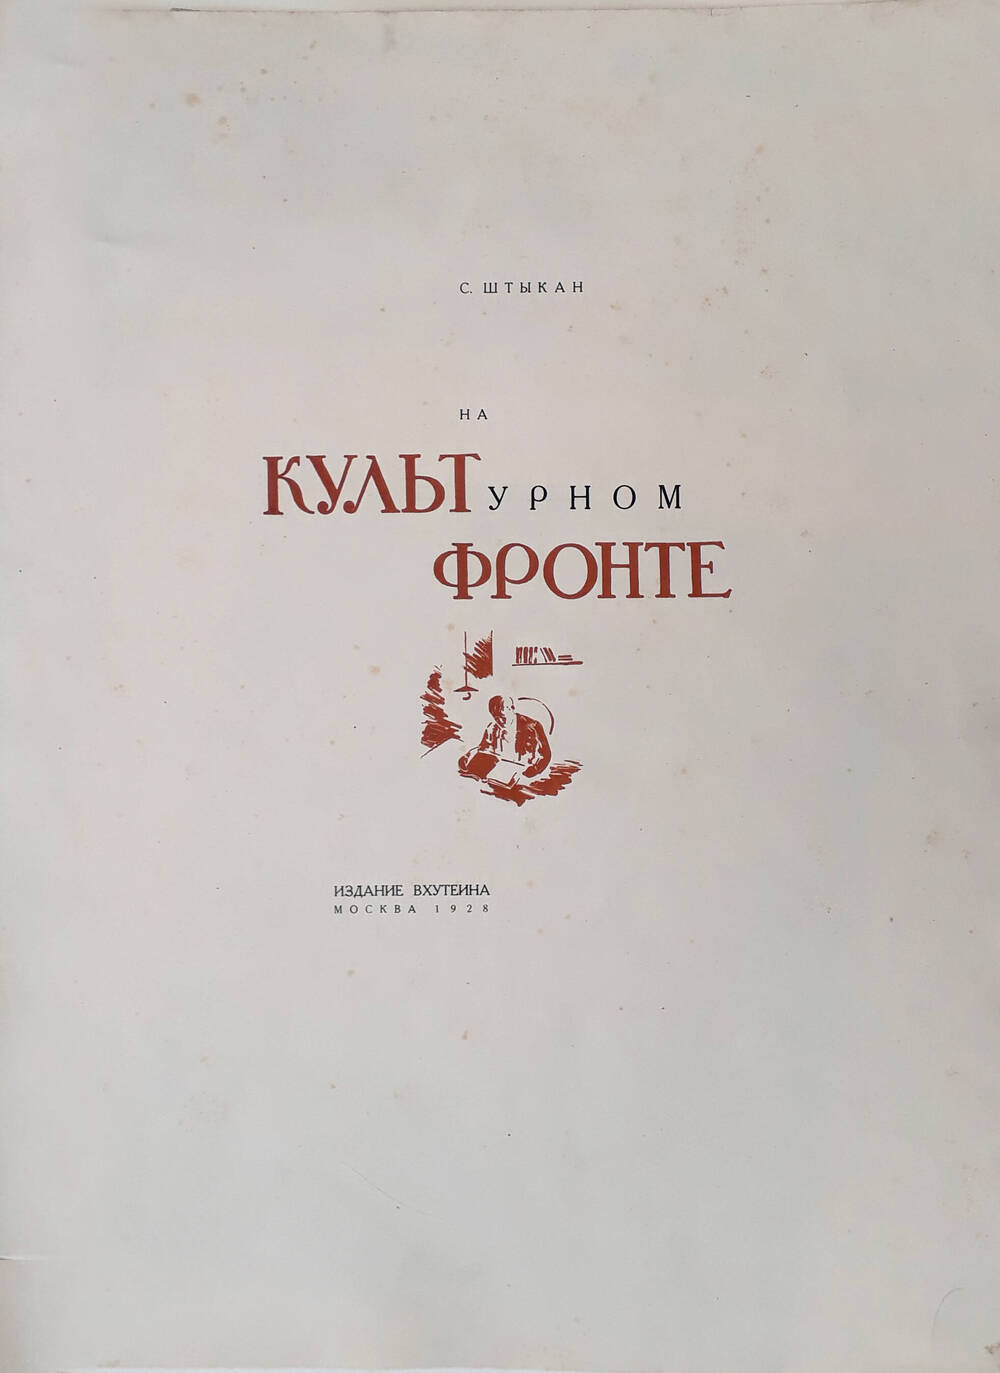 Обложка дипломной работы «На культурном фронте» (ВХУТЕИН, 1928 г.)